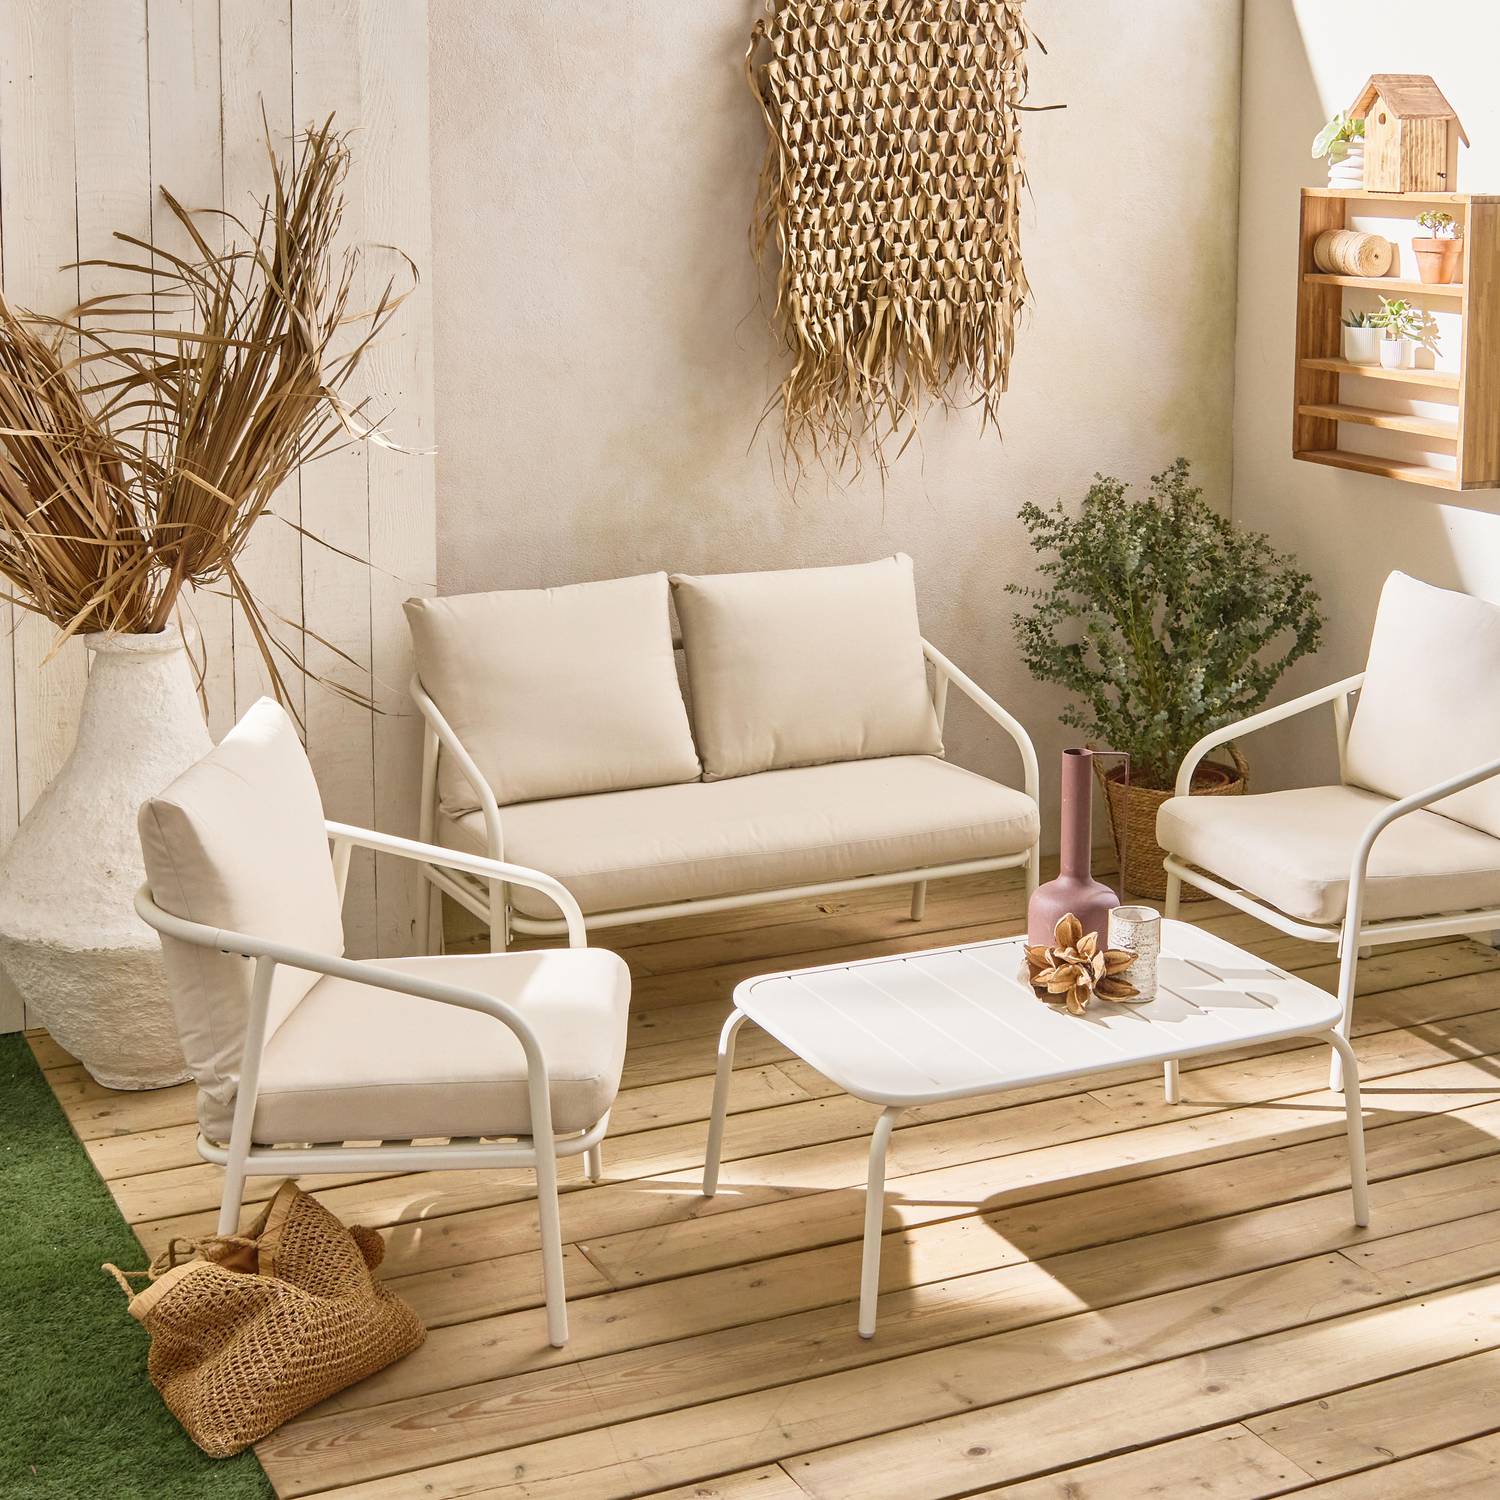 Gartenmöbelset aus Metall 4 Plätze, weiß mit beigefarbenen Kissen, 1 Sofa, 2 Sessel und 1 Tisch - Messina Photo1